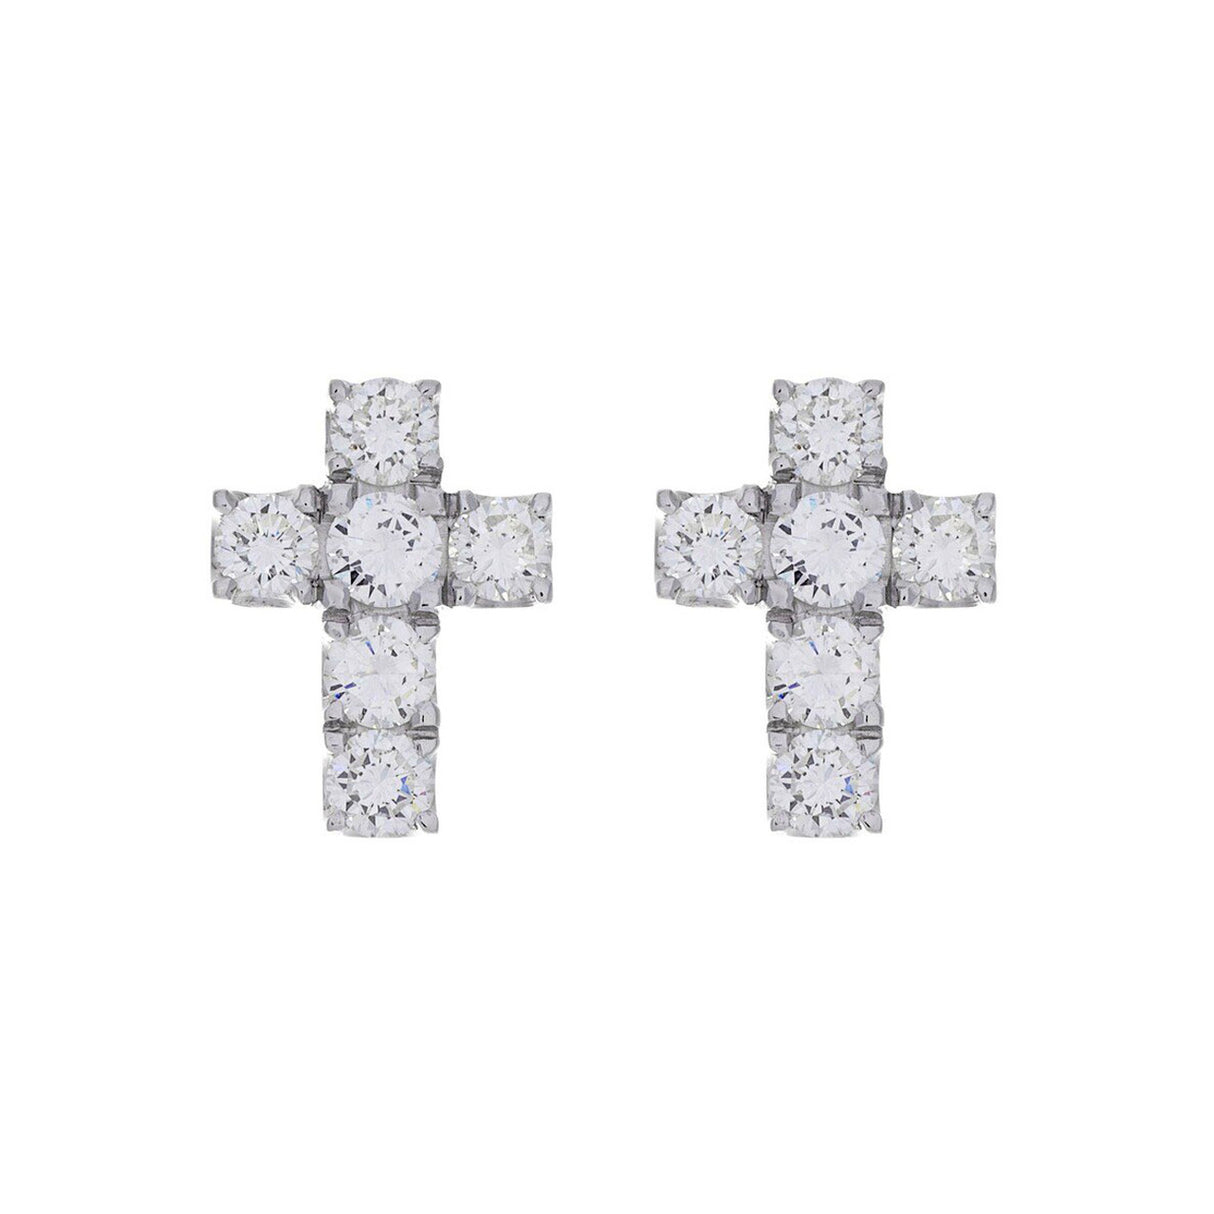 14K White Gold 2.50 Carat Diamond Earrings